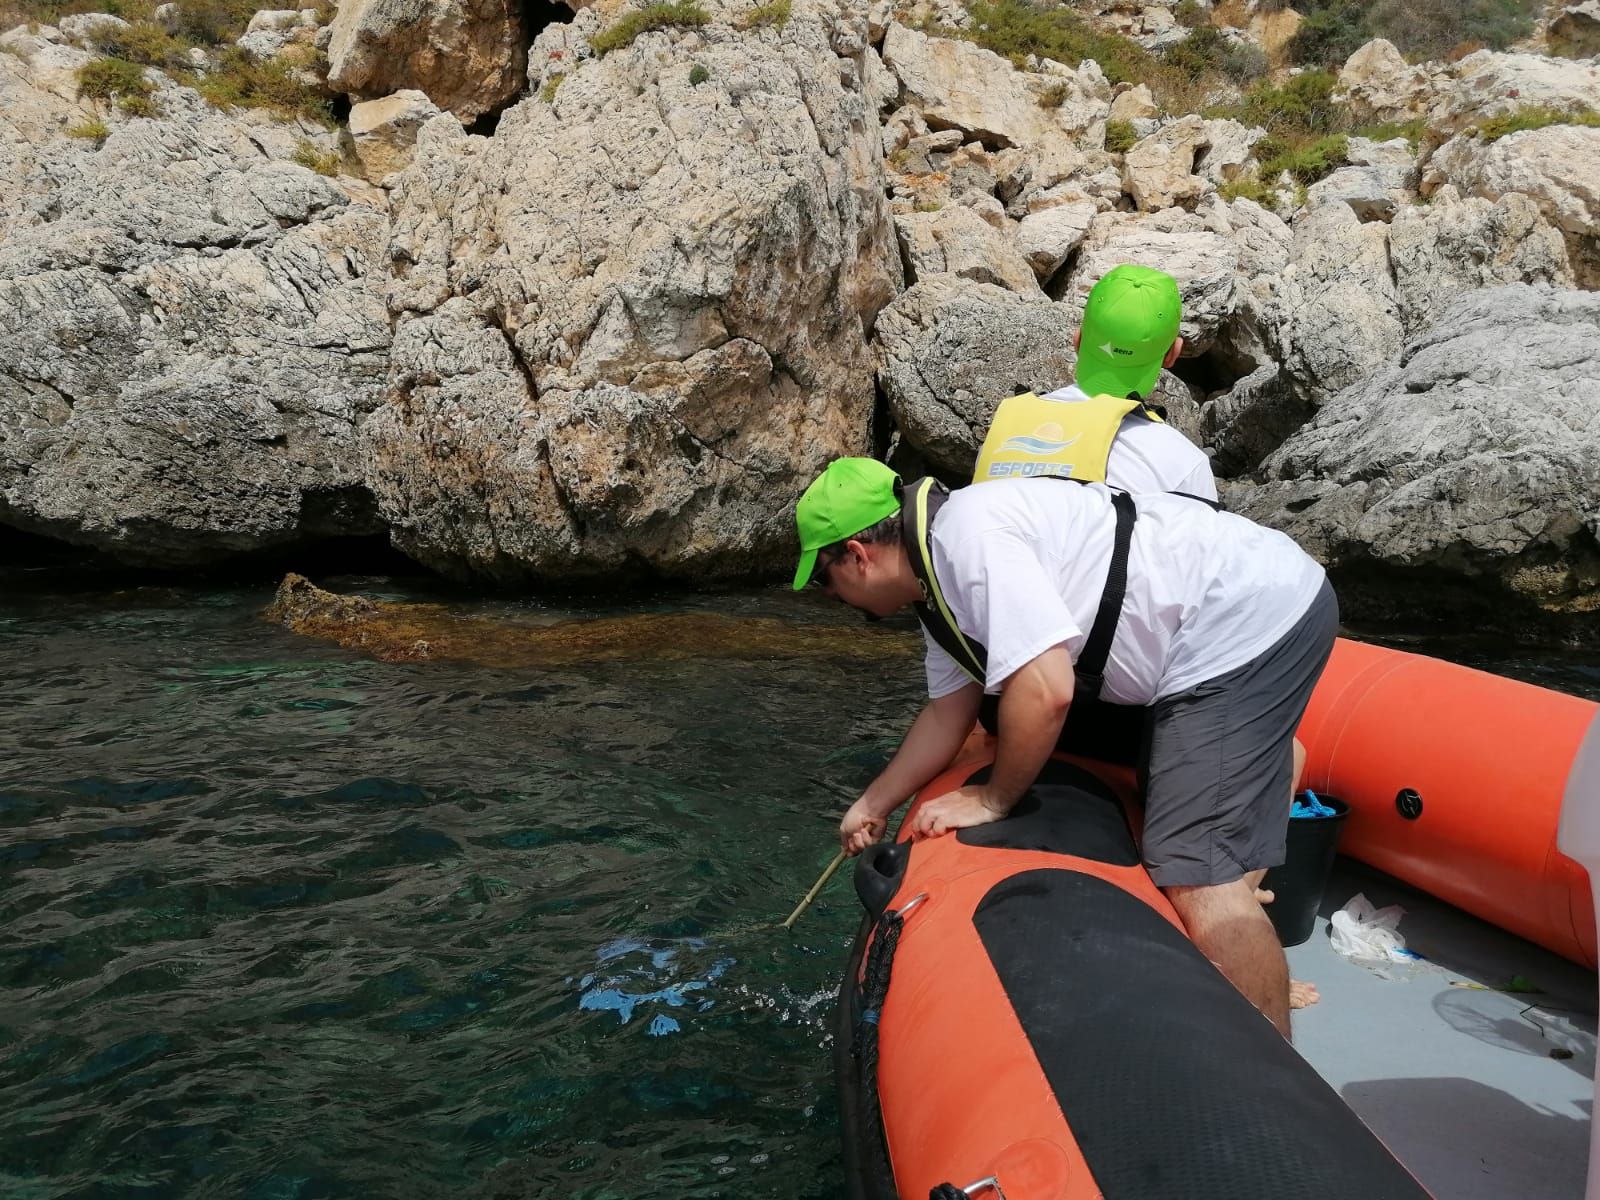 Una veintena de voluntarios participan en la jornada de limpieza del mar convocada por Club Diario de Mallorca